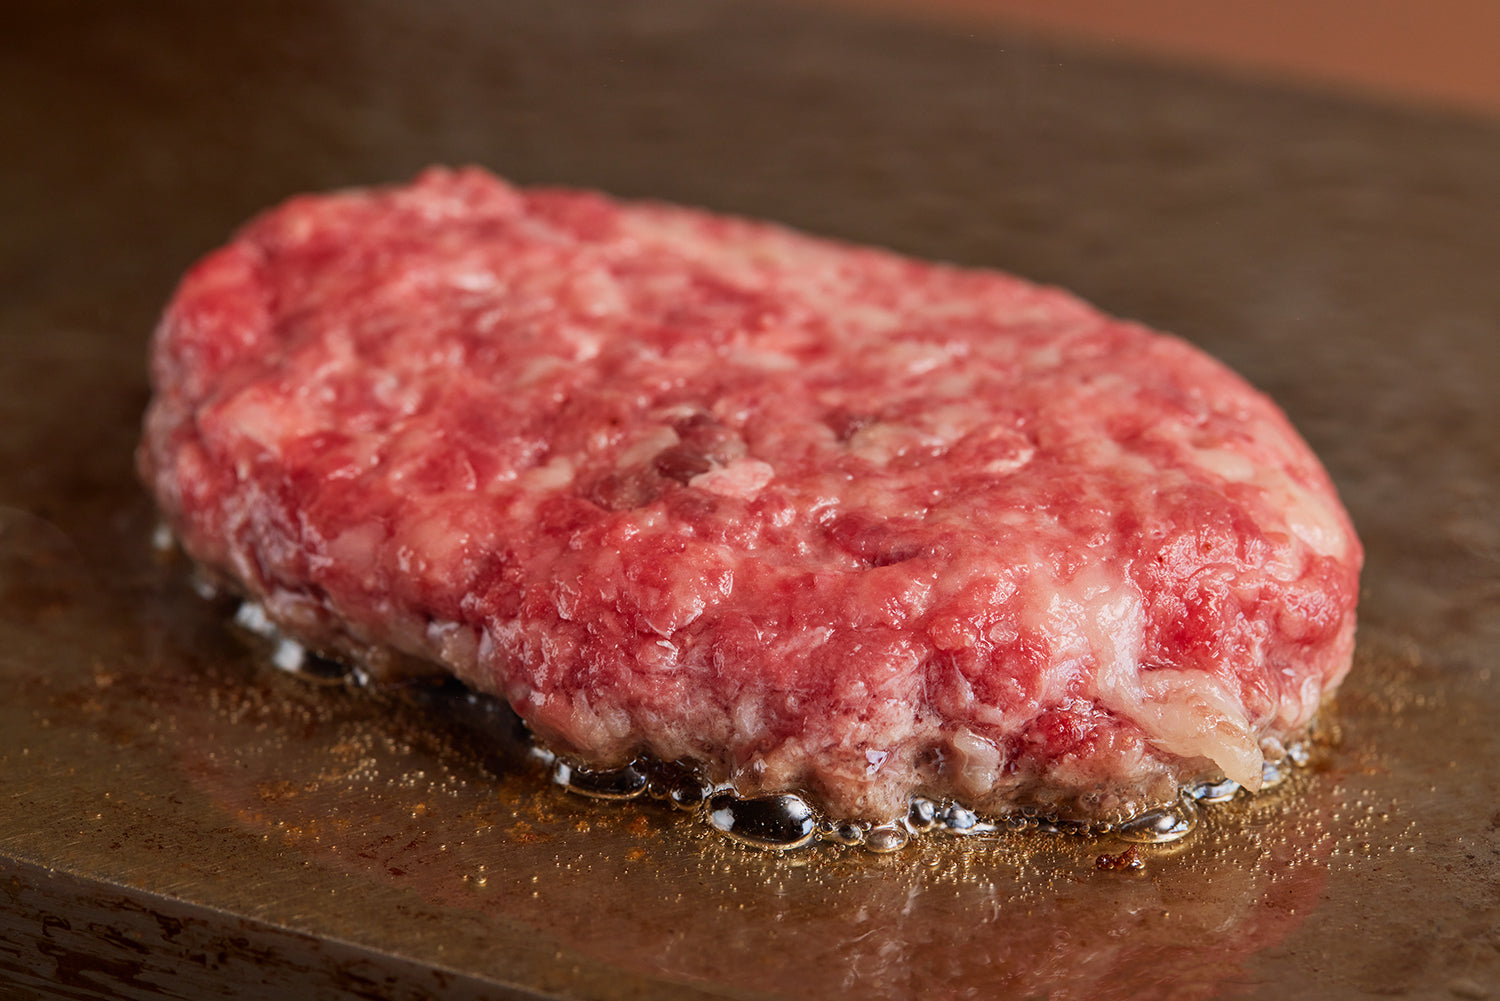 【冷凍】黒毛和牛 100% 極上粗挽きハンバーグステーキ(250G×2個)